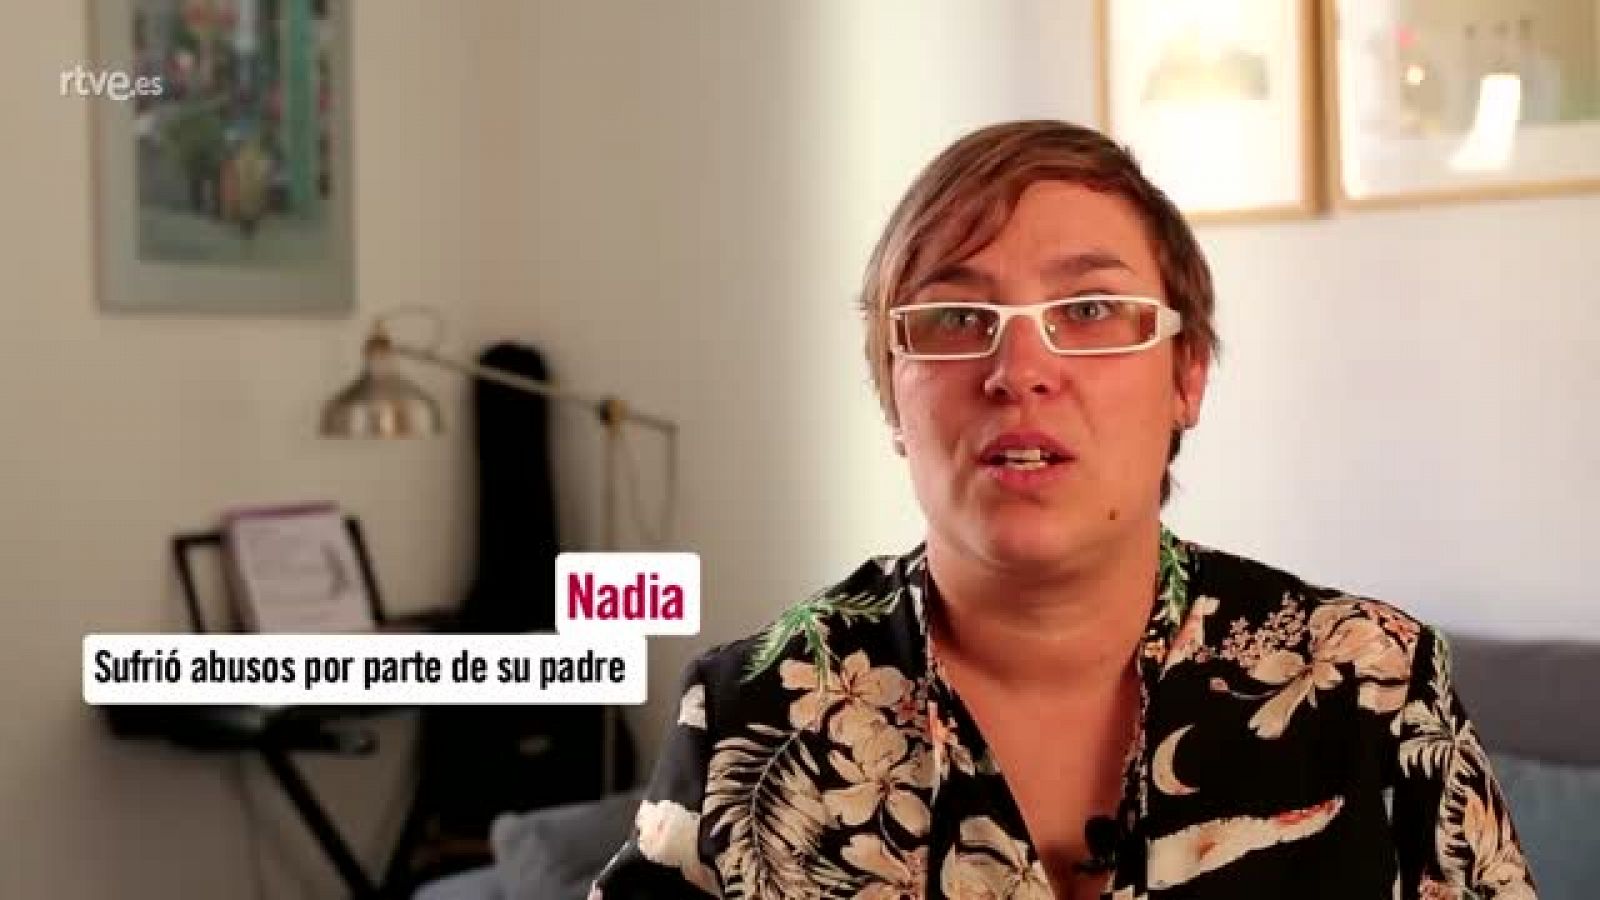 Nadia rompe el silencio y cuenta el abuso sexual que sufrió siendo niña